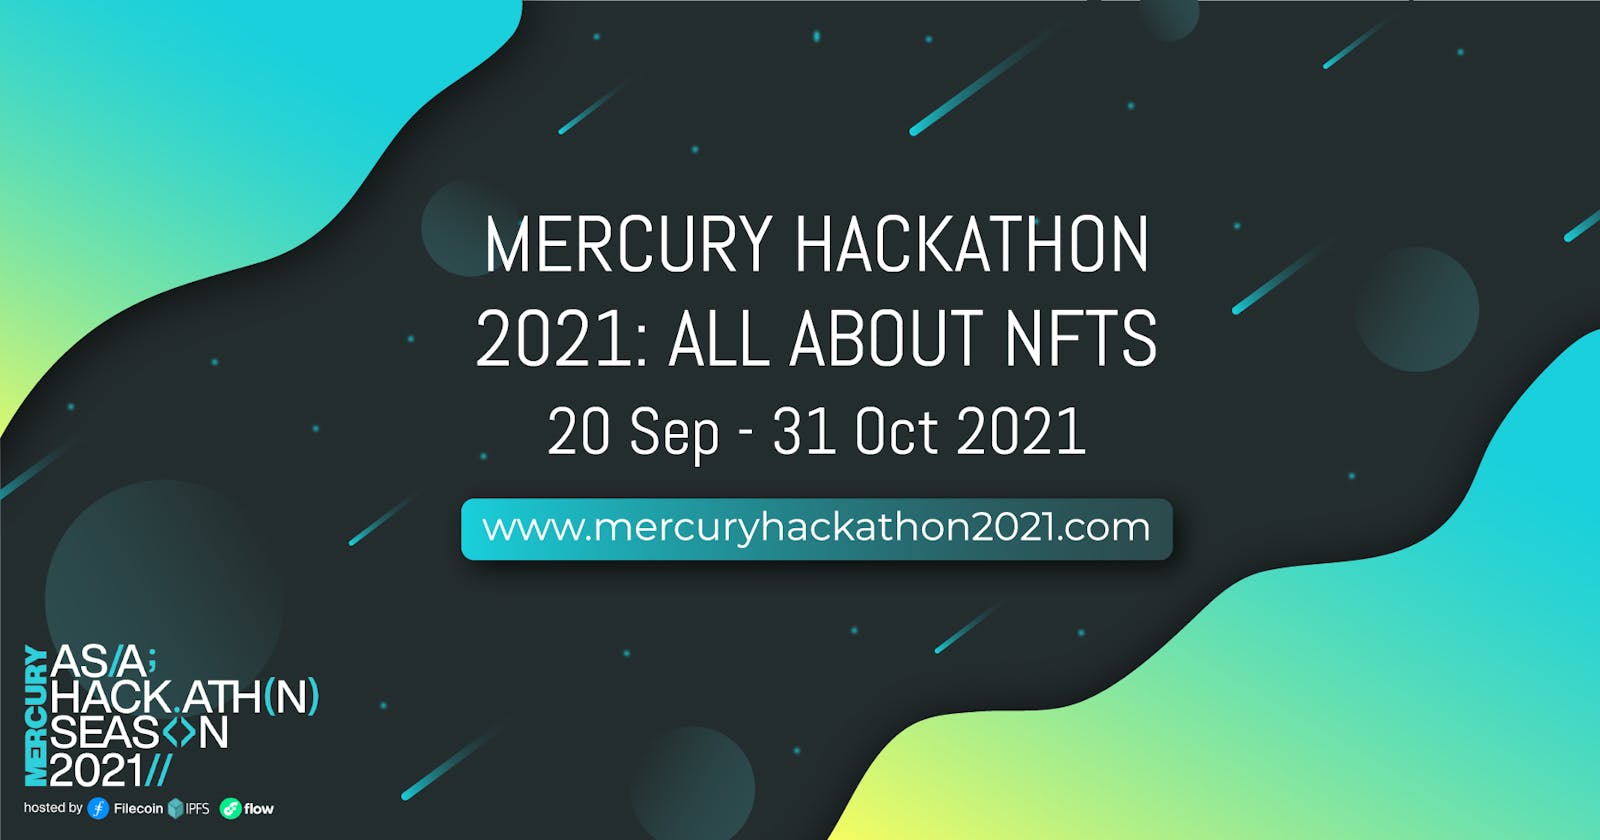 Mercury Hackathon 2021: All About NFTs